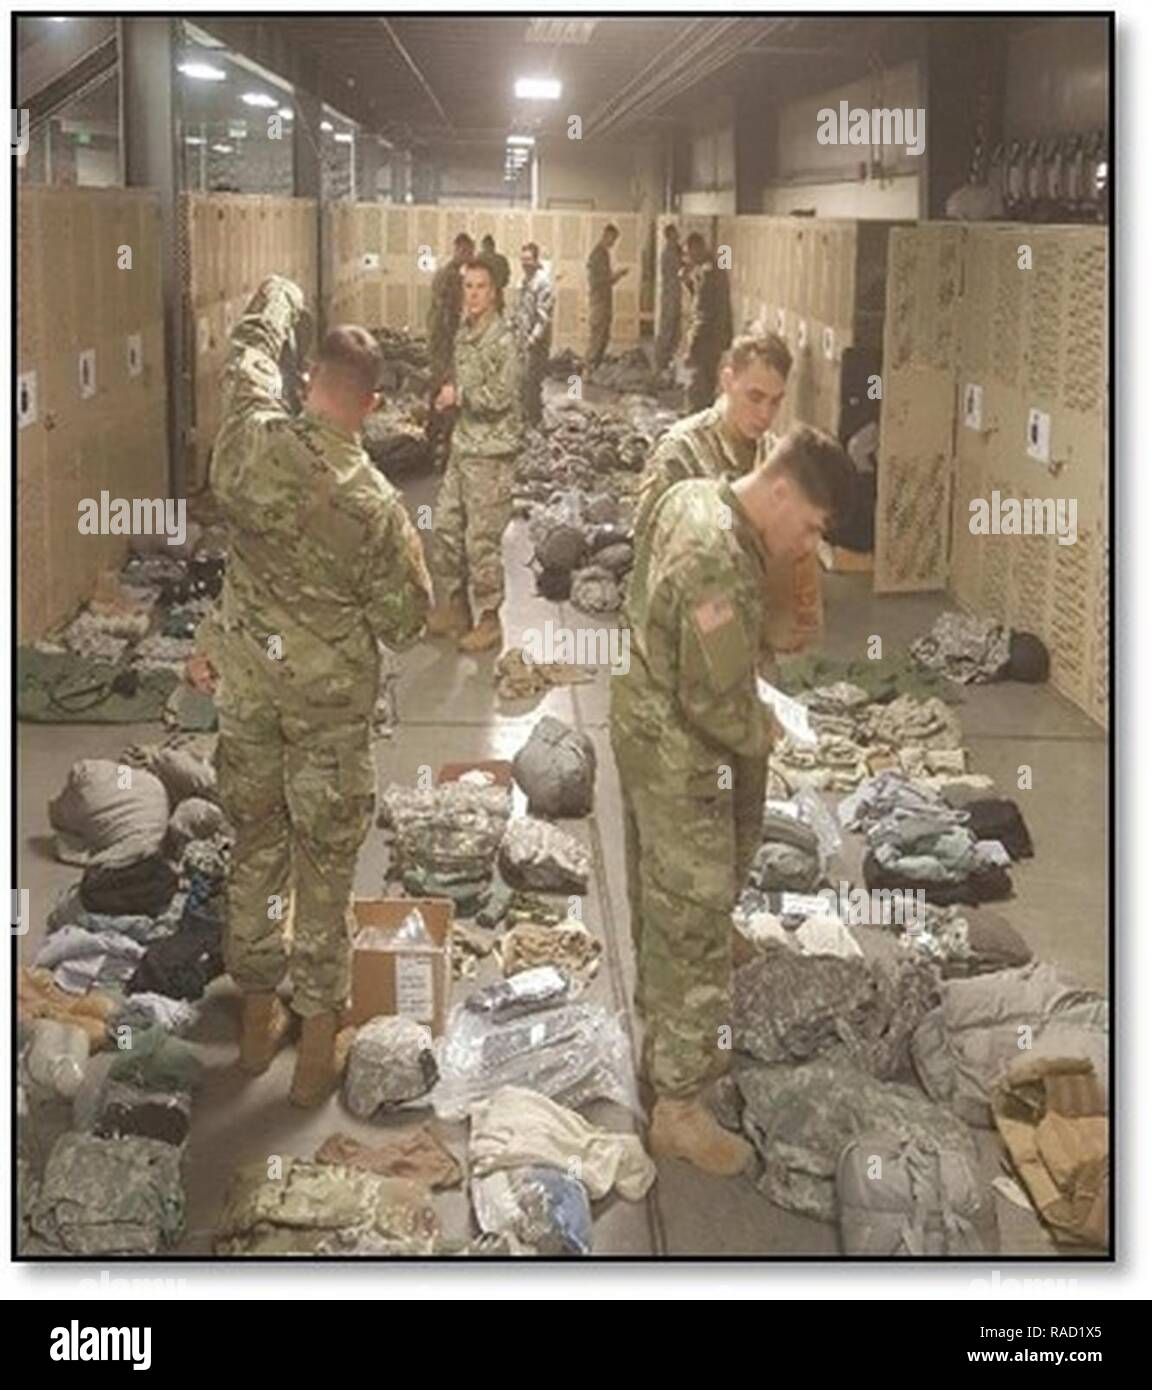 Soldaten des 3. PLT, 576 Abstand Unternehmen Layout und ihre Ausrüstung in der Vorbereitung für die Drehung des Unternehmens Lager Humphreys prüfen. Stockfoto